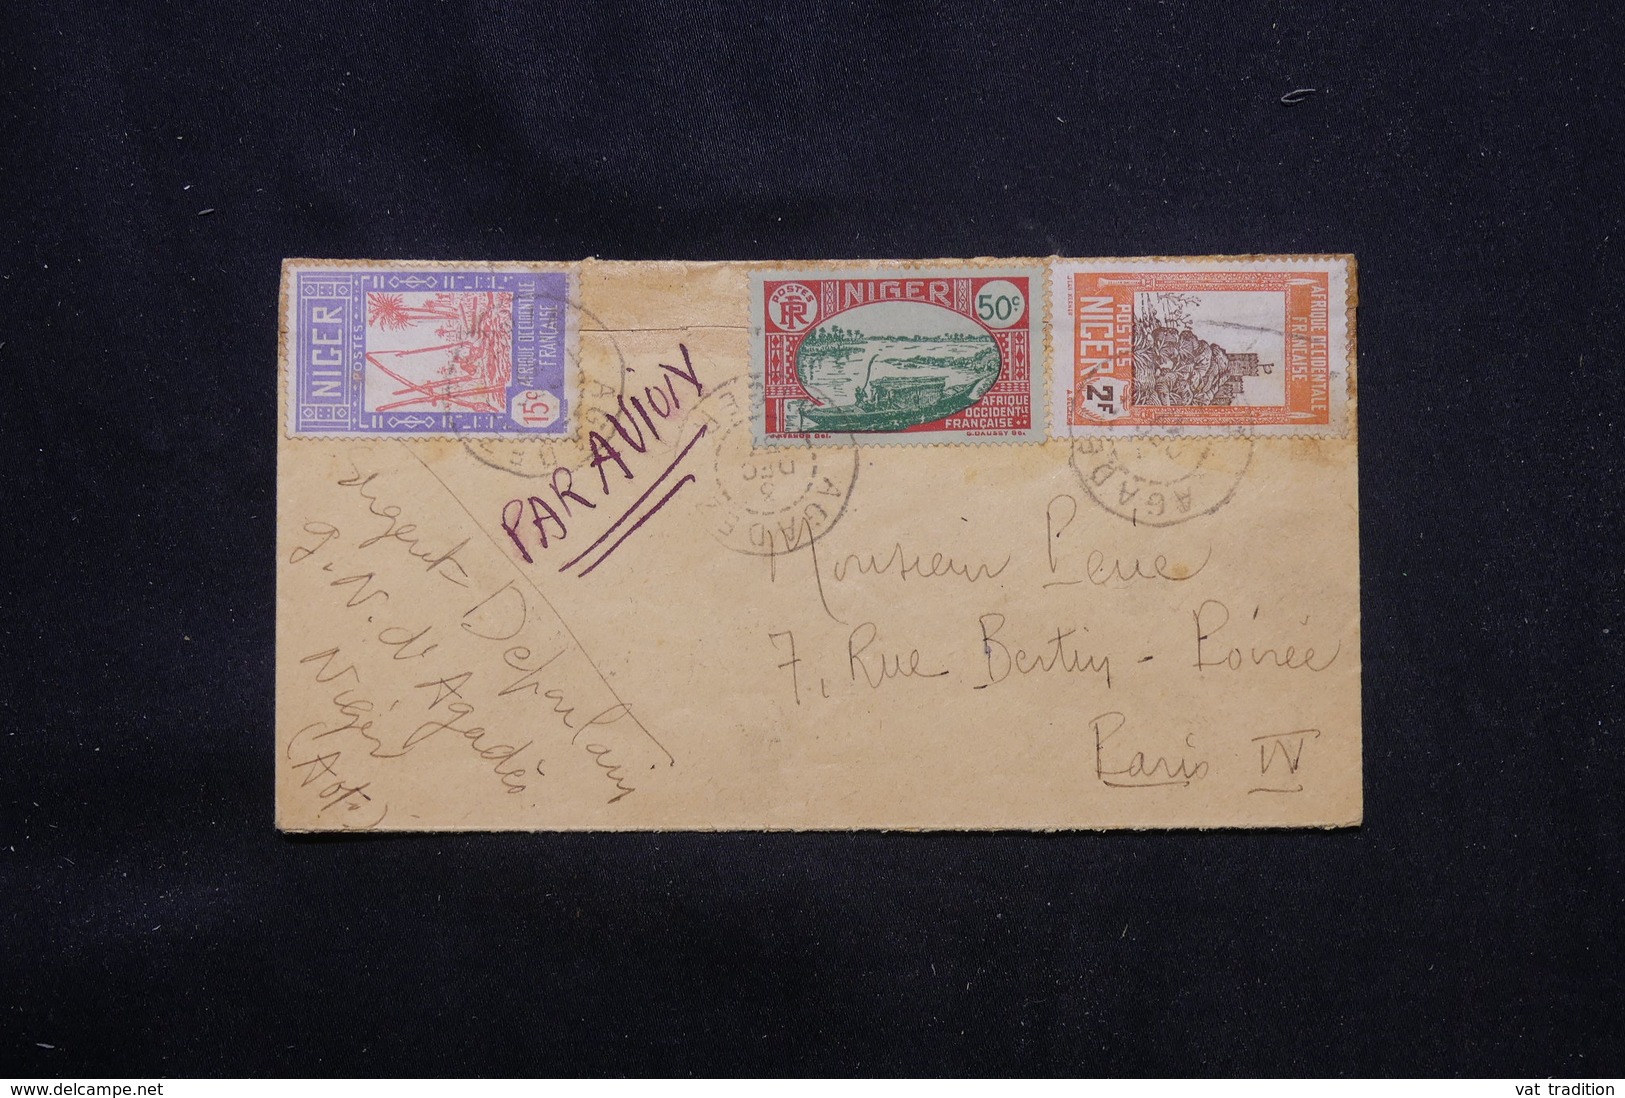 NIGER - Affranchissement Plaisant Sur Enveloppe De Agades En 1937 Pour La France Par Avion - L 59330 - Covers & Documents